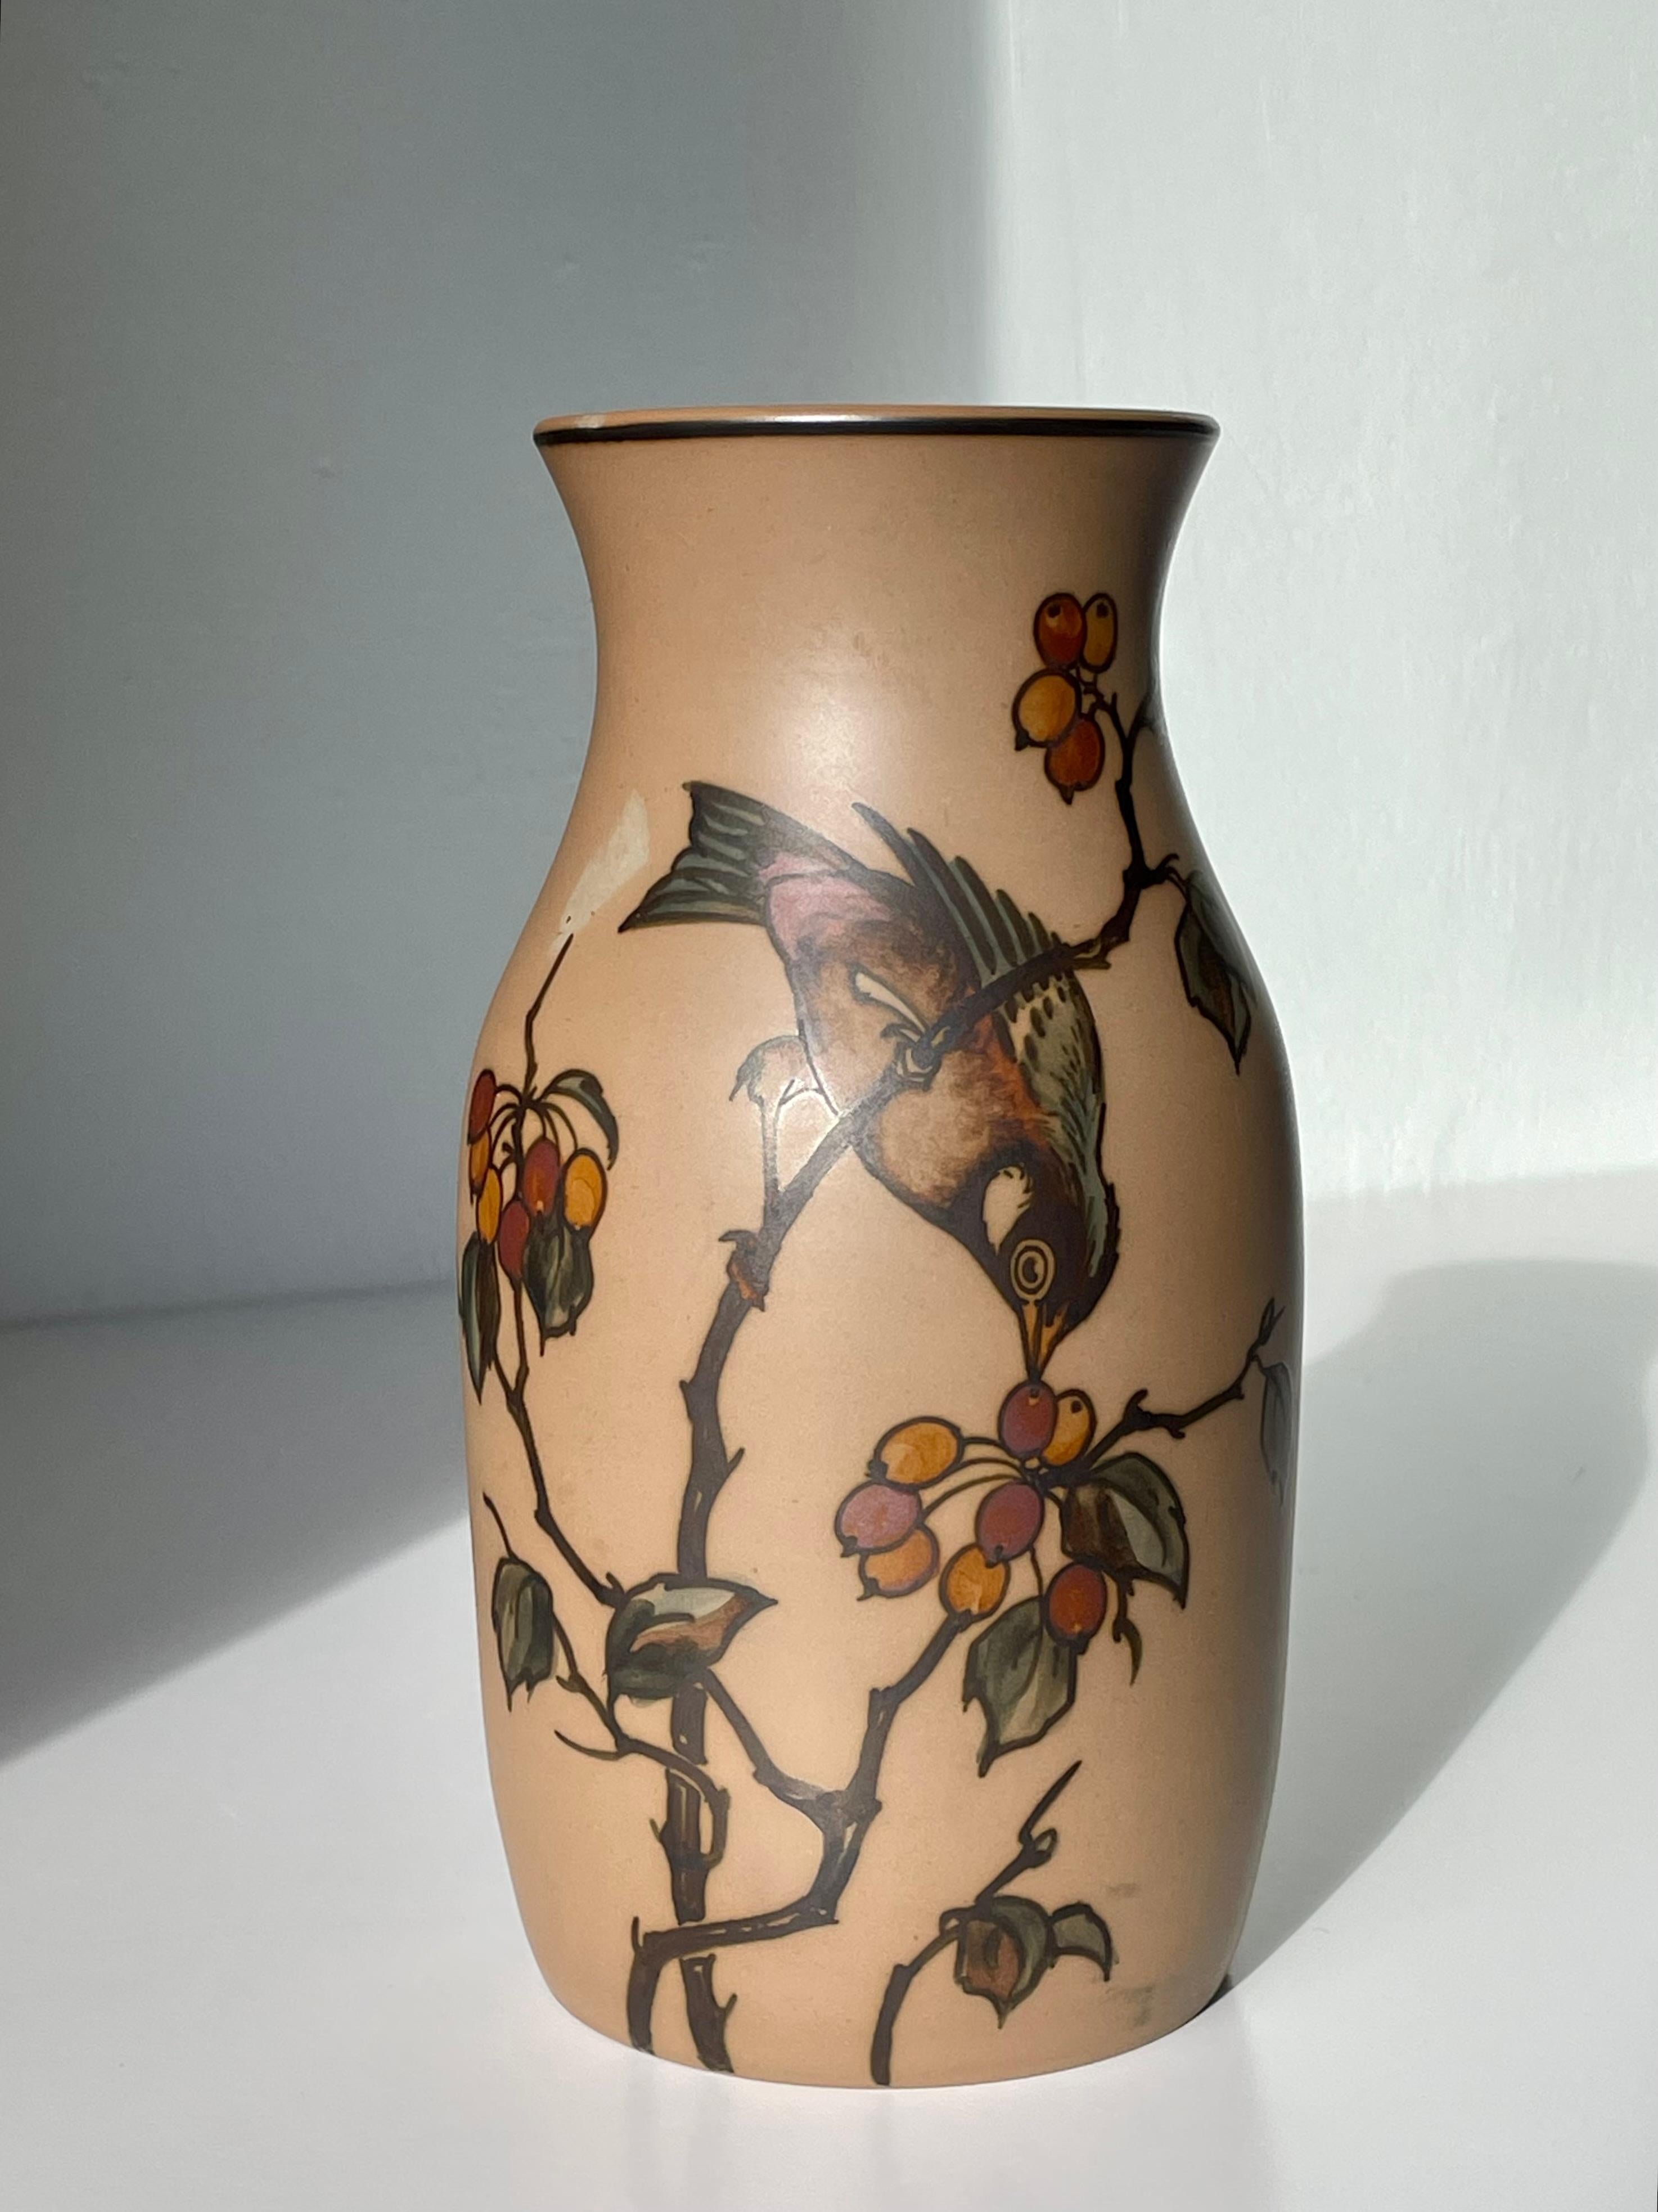 Vase Art nouveau en terre cuite des années 1940 avec des décorations organiques et florales naturalistes peintes à la main, avec un oiseau coloré cueillant des baies sur une Branch. Fabriqué par L. Hjorths Terracottafabrik dans la petite ville de